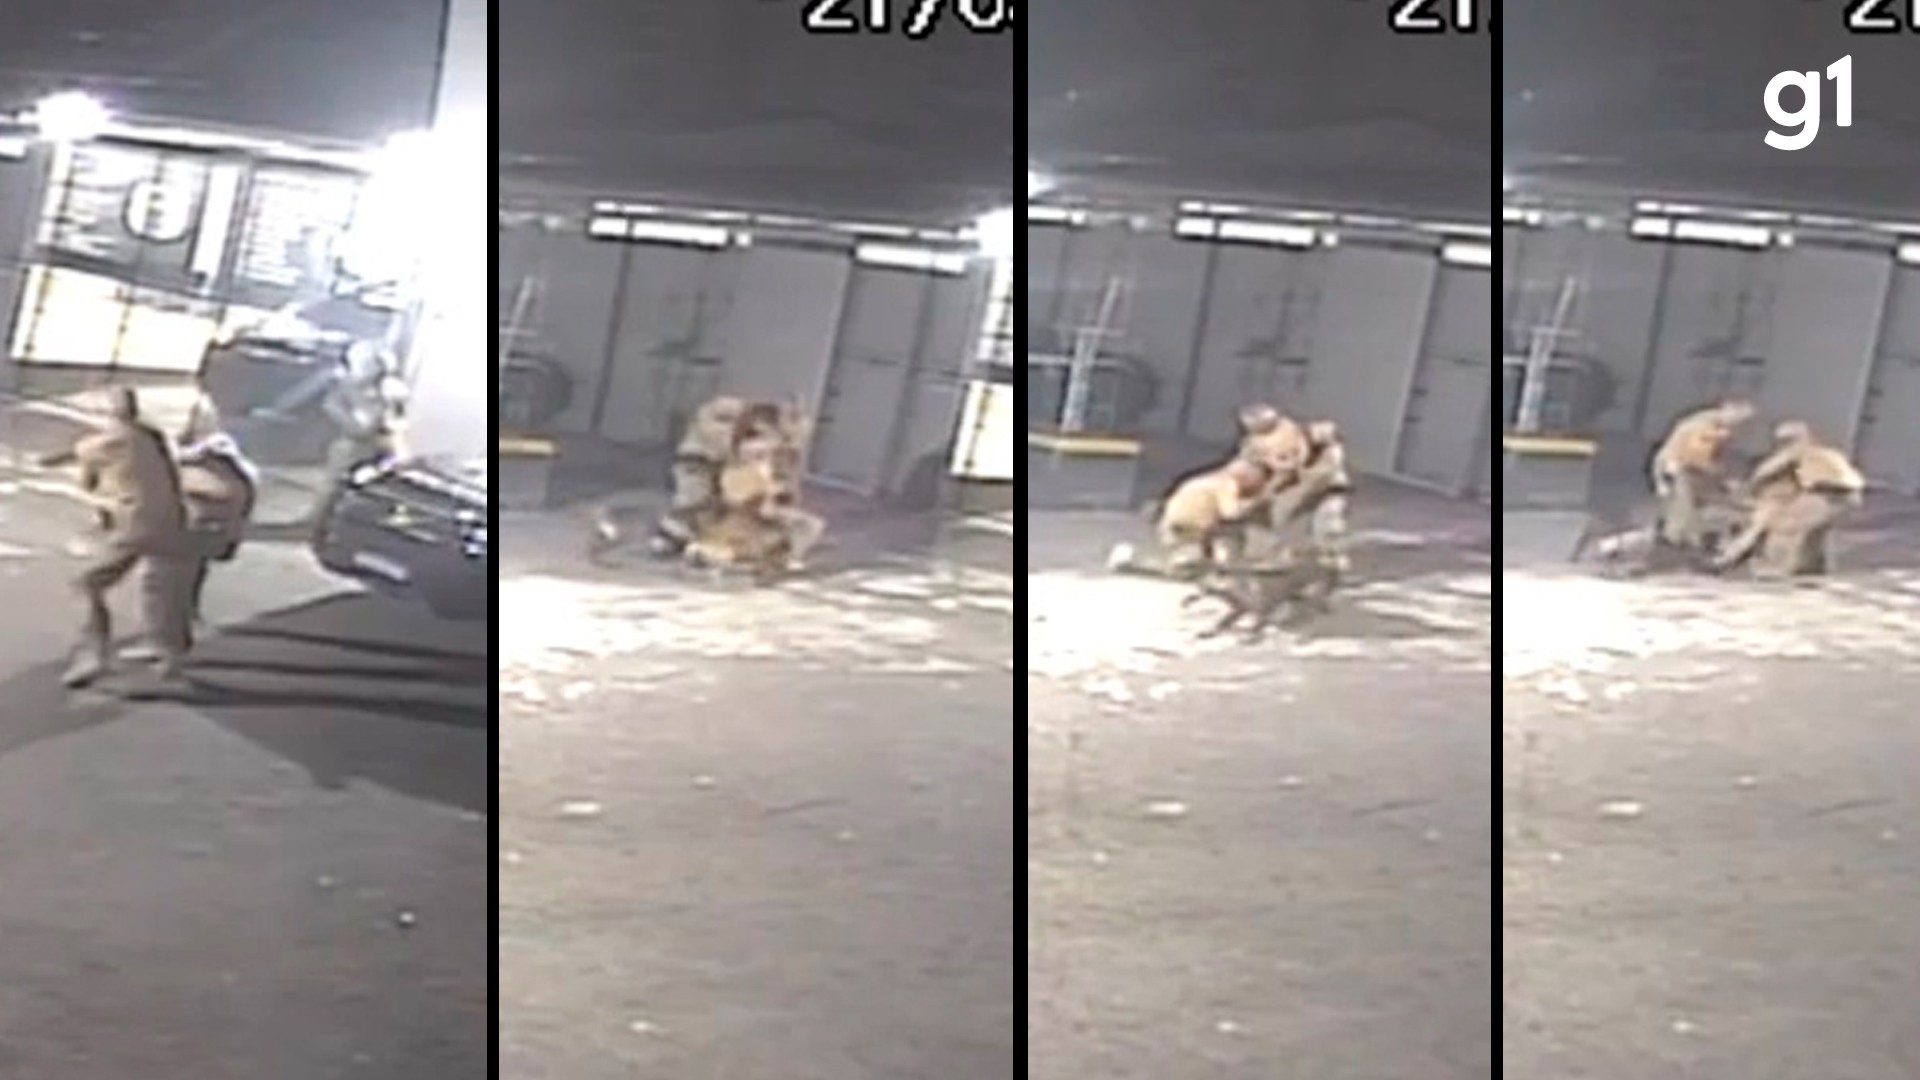 Vídeo: policiais do grupo de elite de SP brigam por causa da escala de folga na Páscoa e são mordidos por cães do grupamento